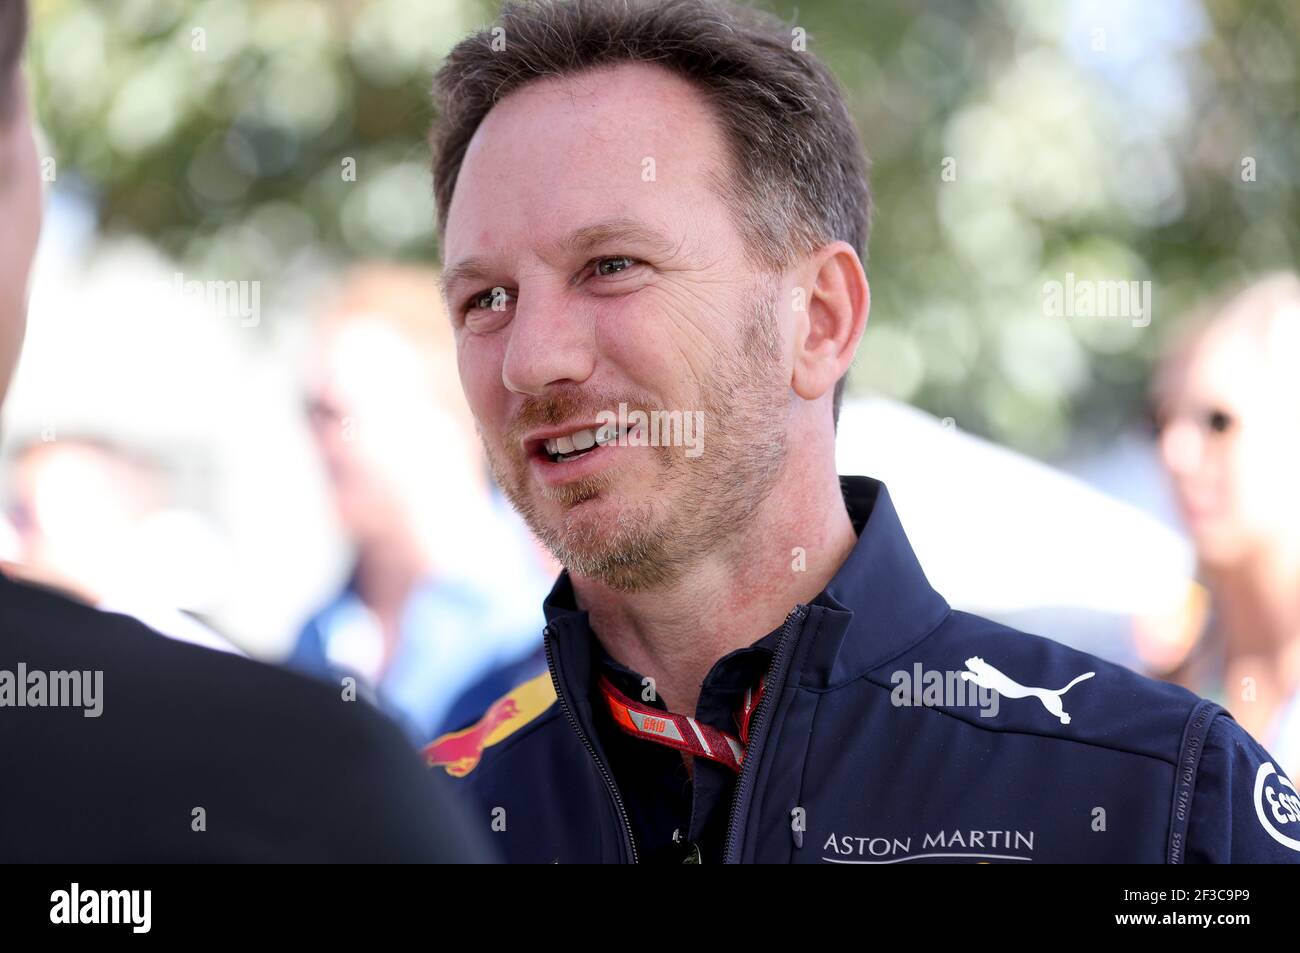 HORNER Christian (gbr), Team Principal della Red Bull Racing, ritratto durante il campionato di Formula 1 2018 a Melbourne, Gran Premio d'Australia, dal 22 al 25 marzo - Foto DPPI Foto Stock